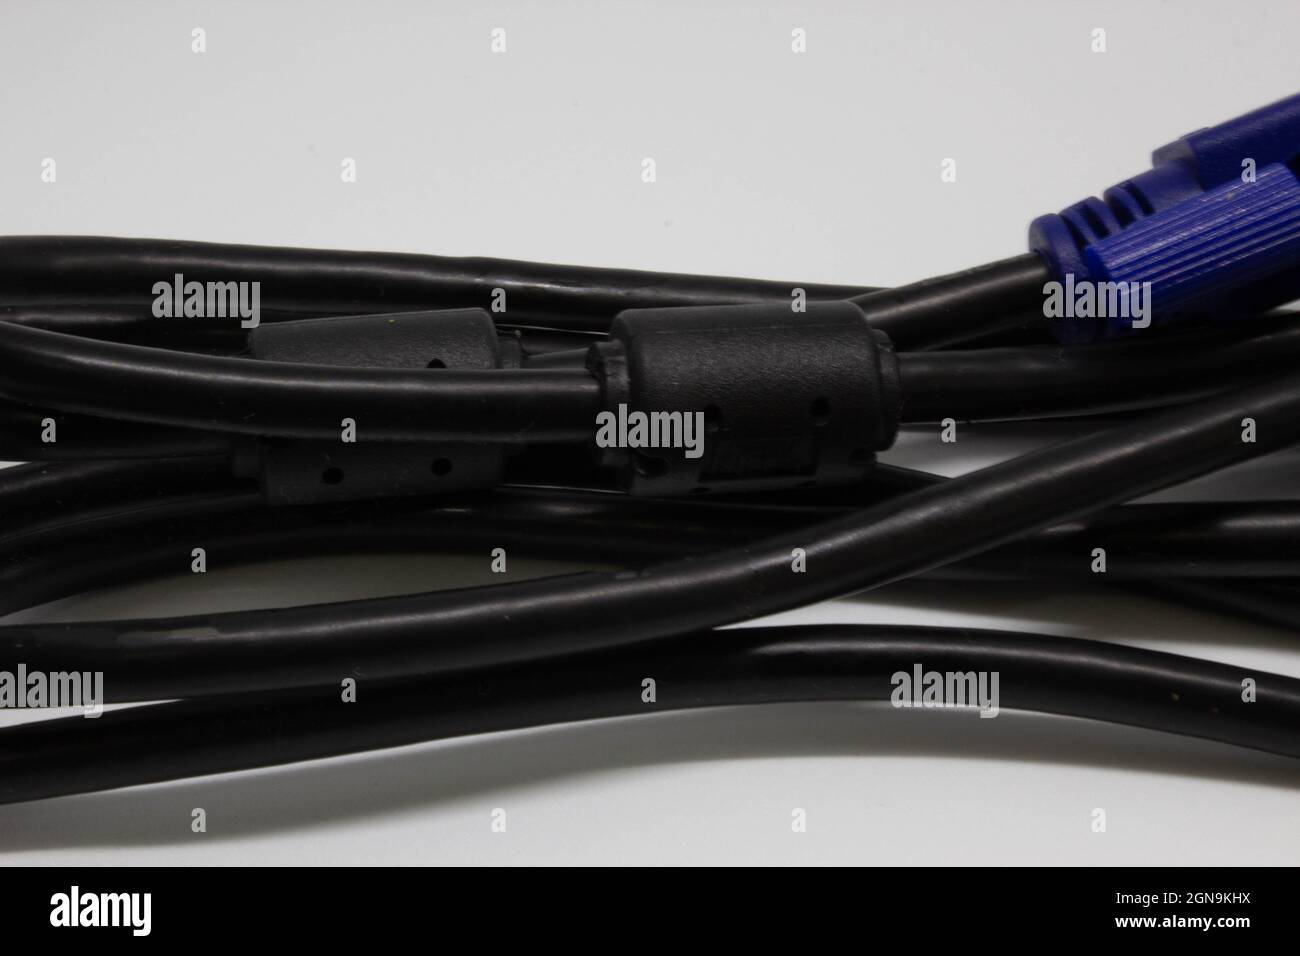 Câble de moniteur VGA. Deux extrémités bleues et câble noir. Câble du dispositif de surveillance. Banque D'Images